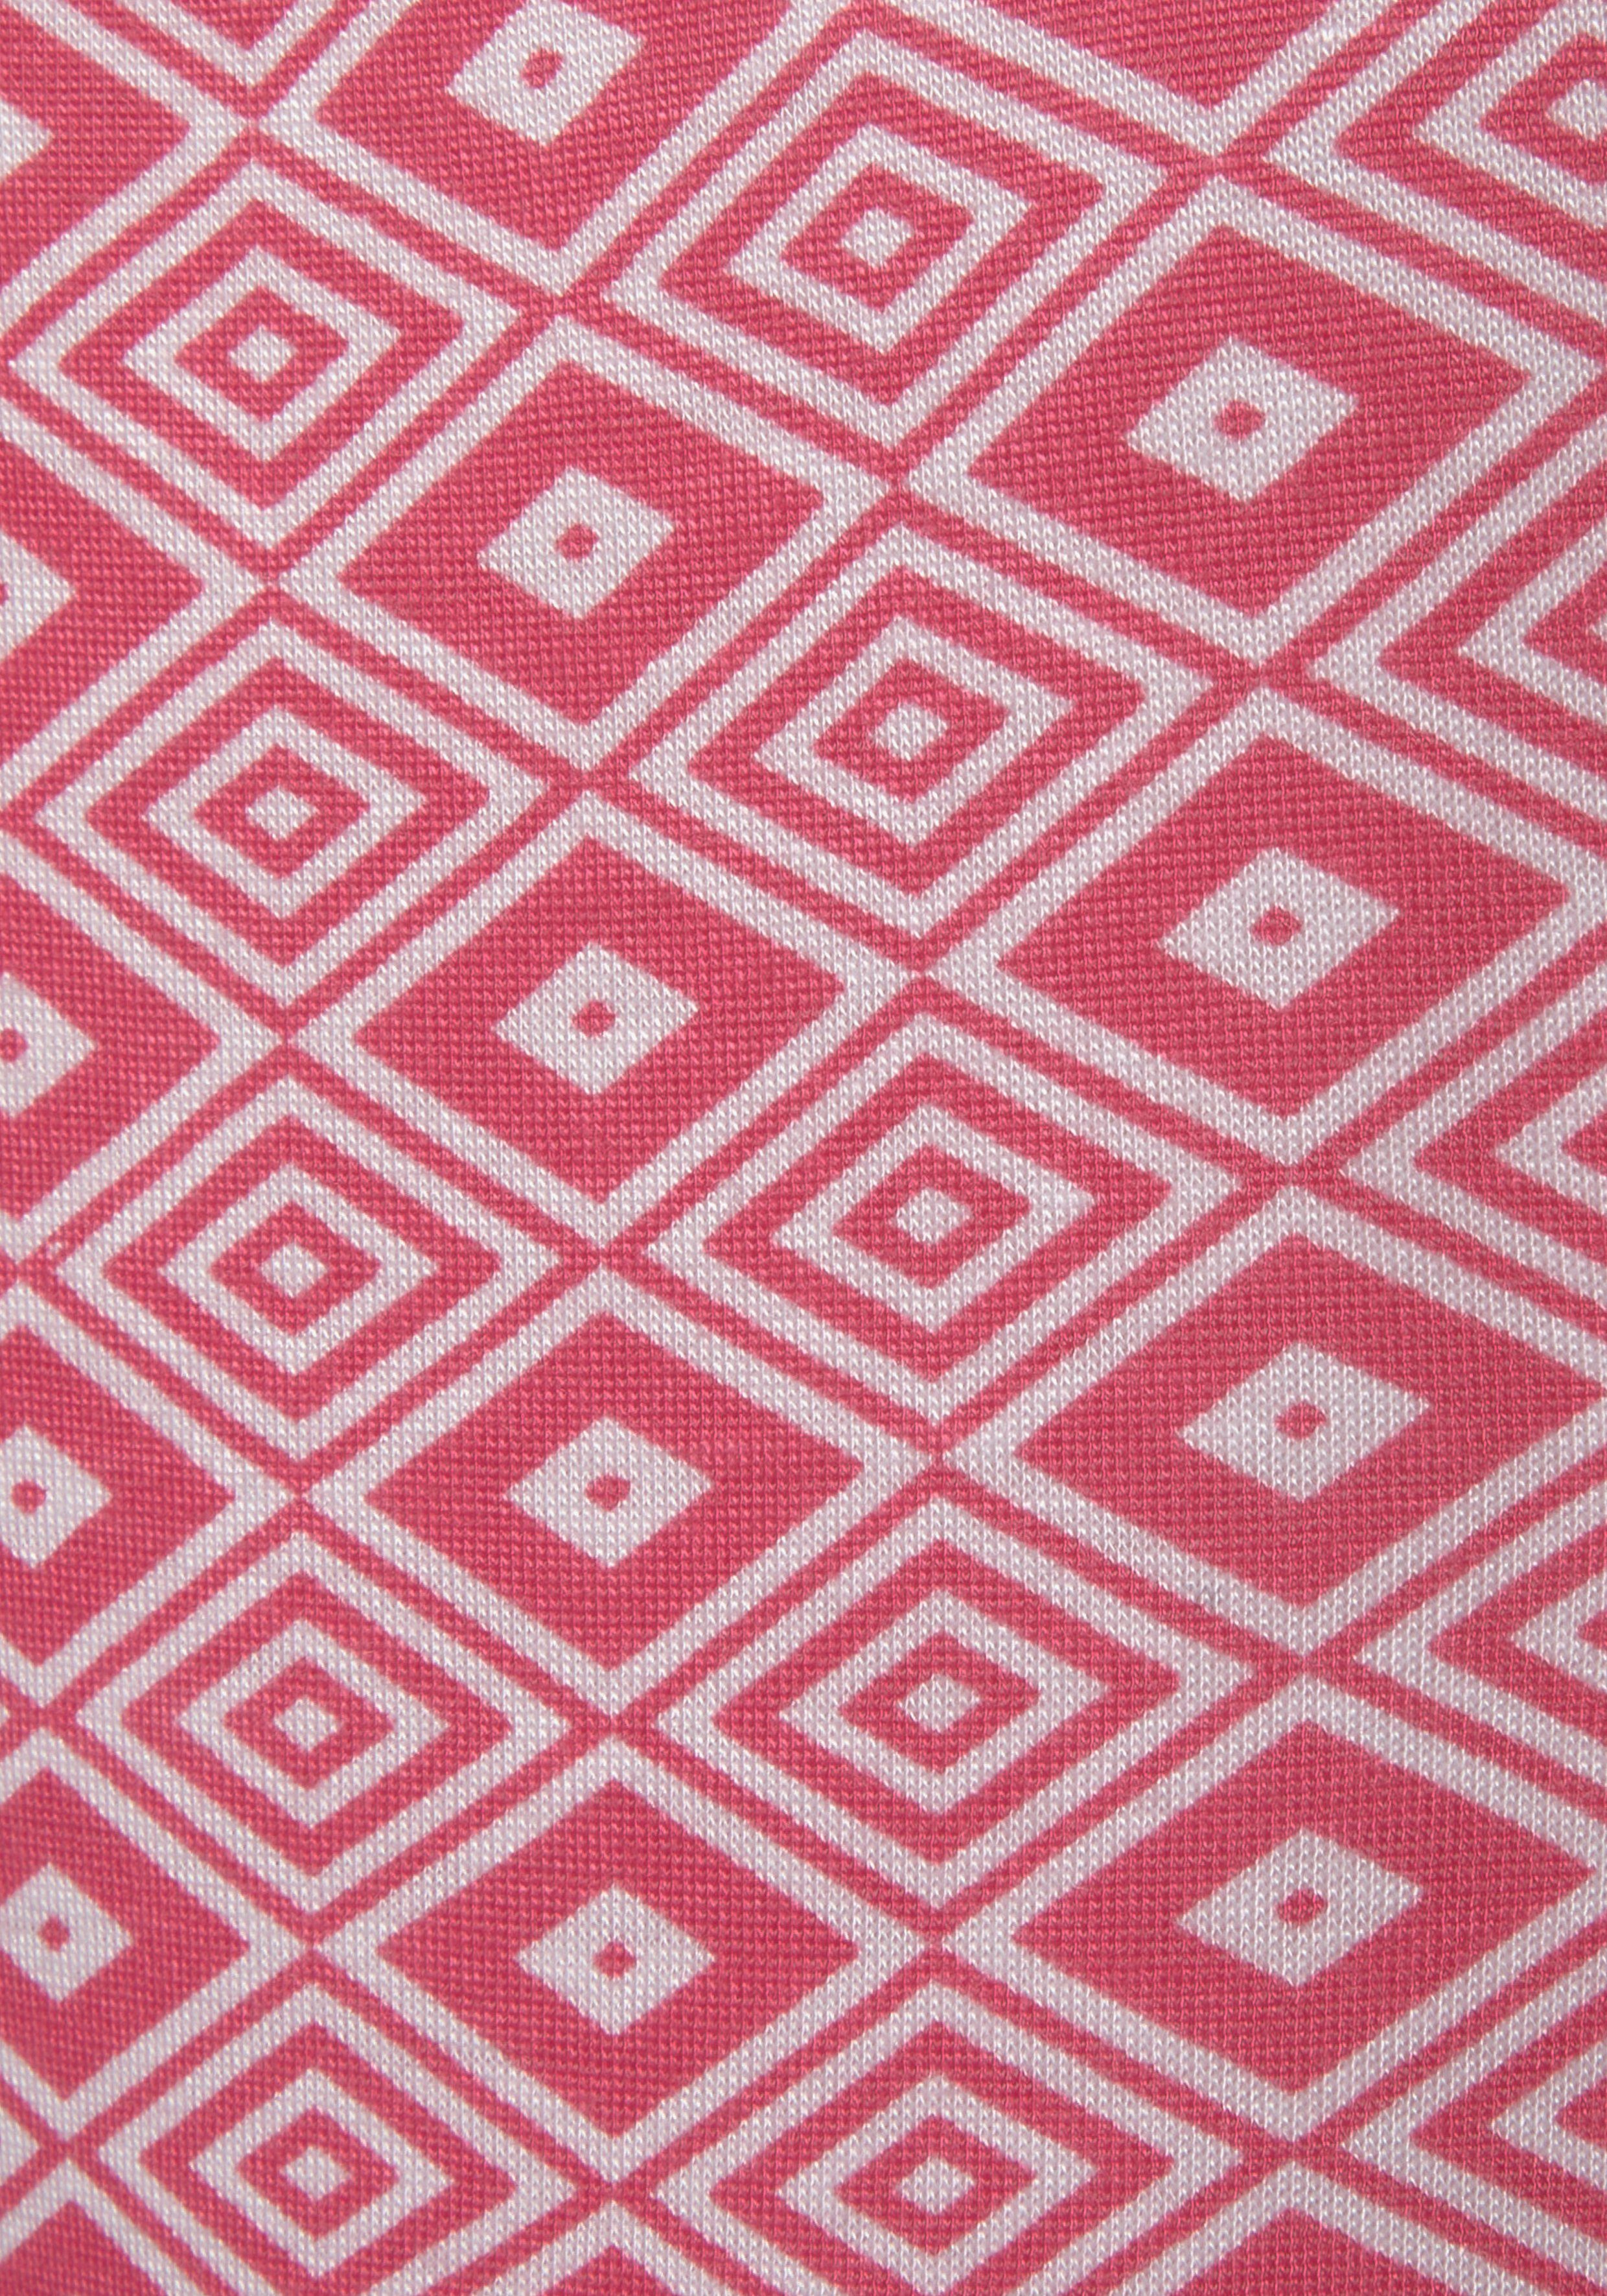 Vivance Dreams Schlafhose pink bedruckt in Ethno-Design schönem